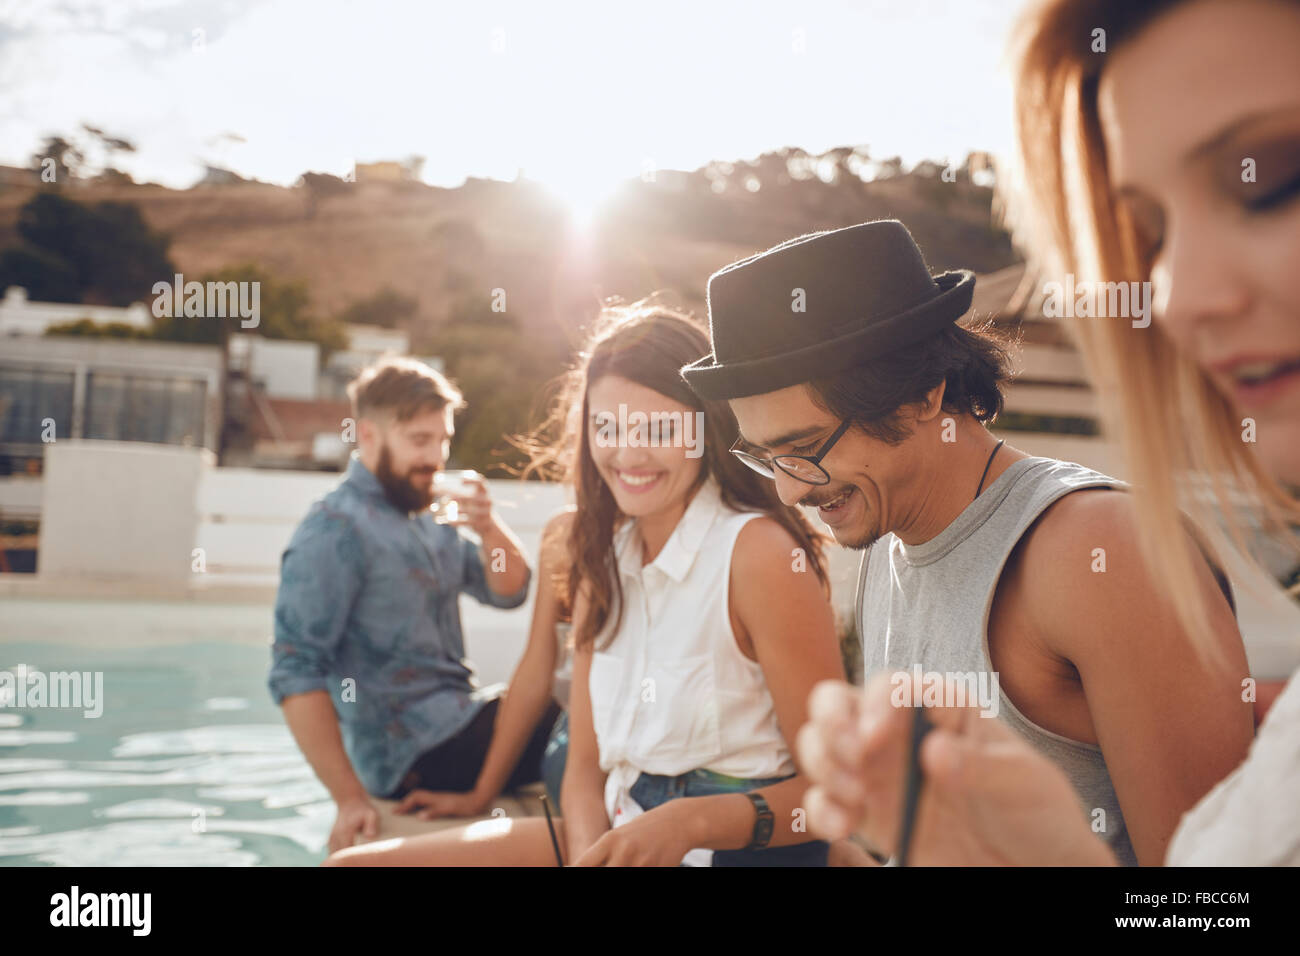 Im Freien Schuss von glücklicher junger Mann sitzen am Pool mit seinen Freunden feiern. Gruppe von jungen Leuten hängen rund um ein Schwimmbad-p Stockfoto